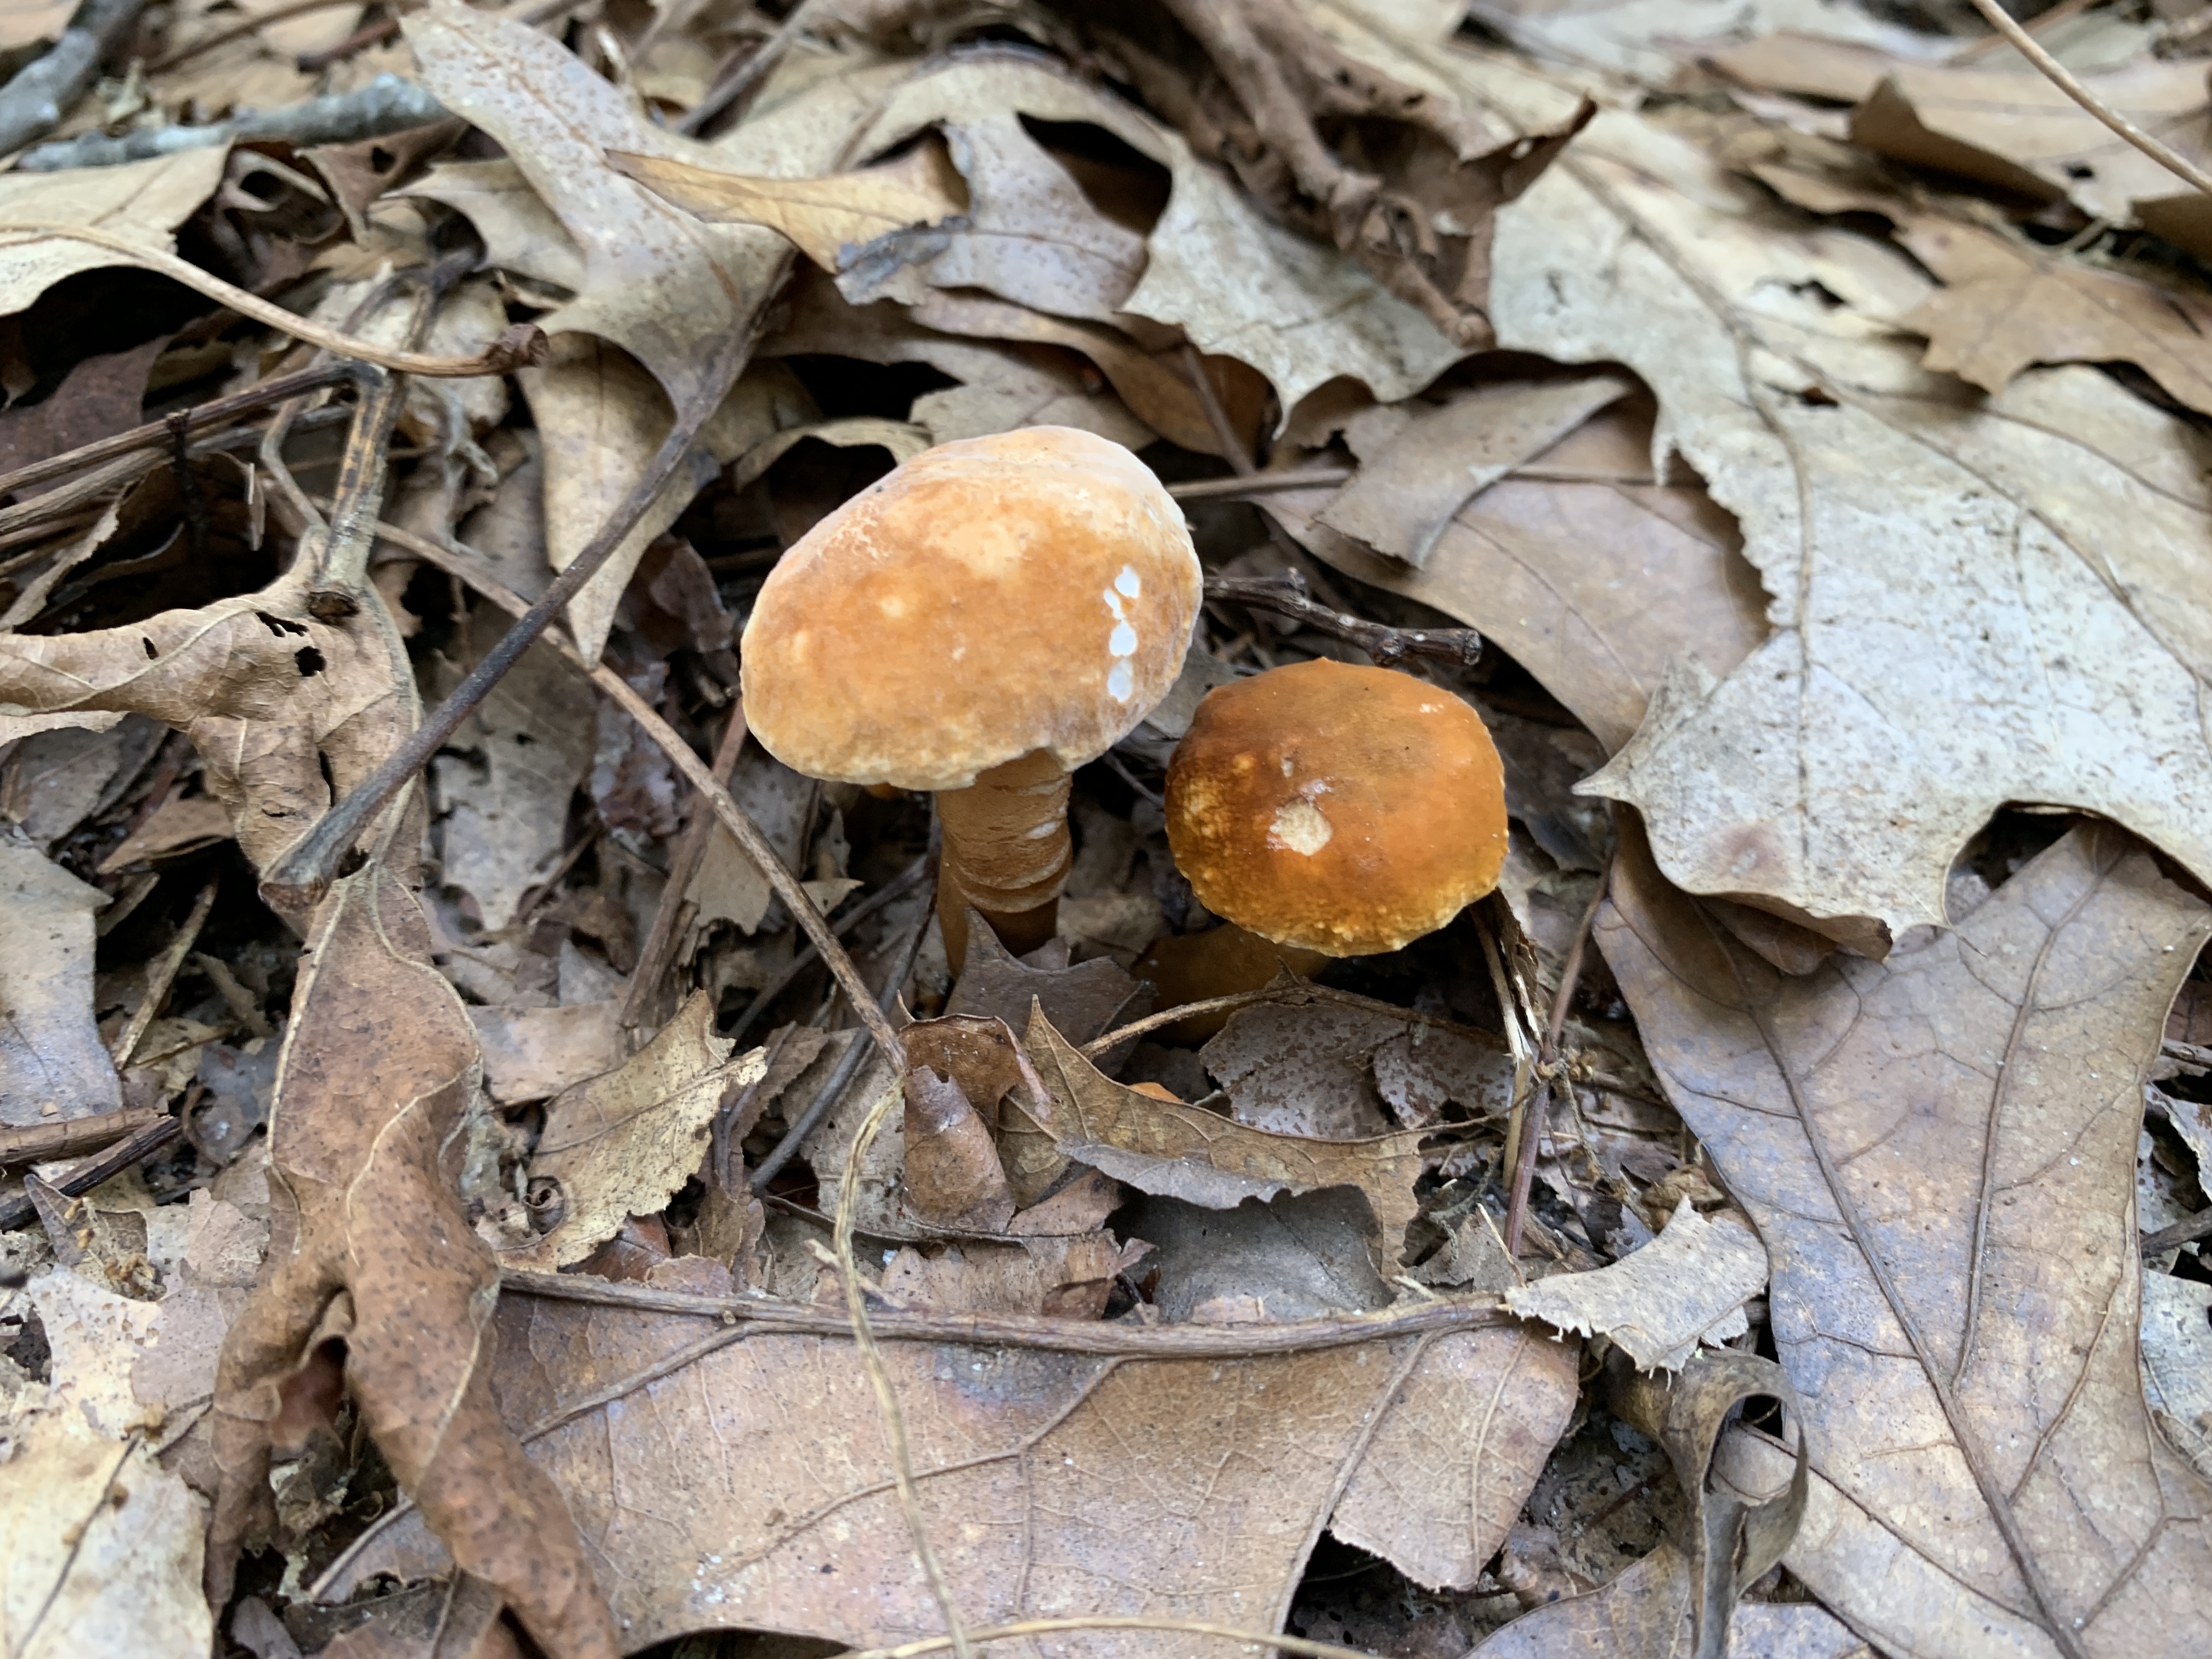 mushrooms among leaves